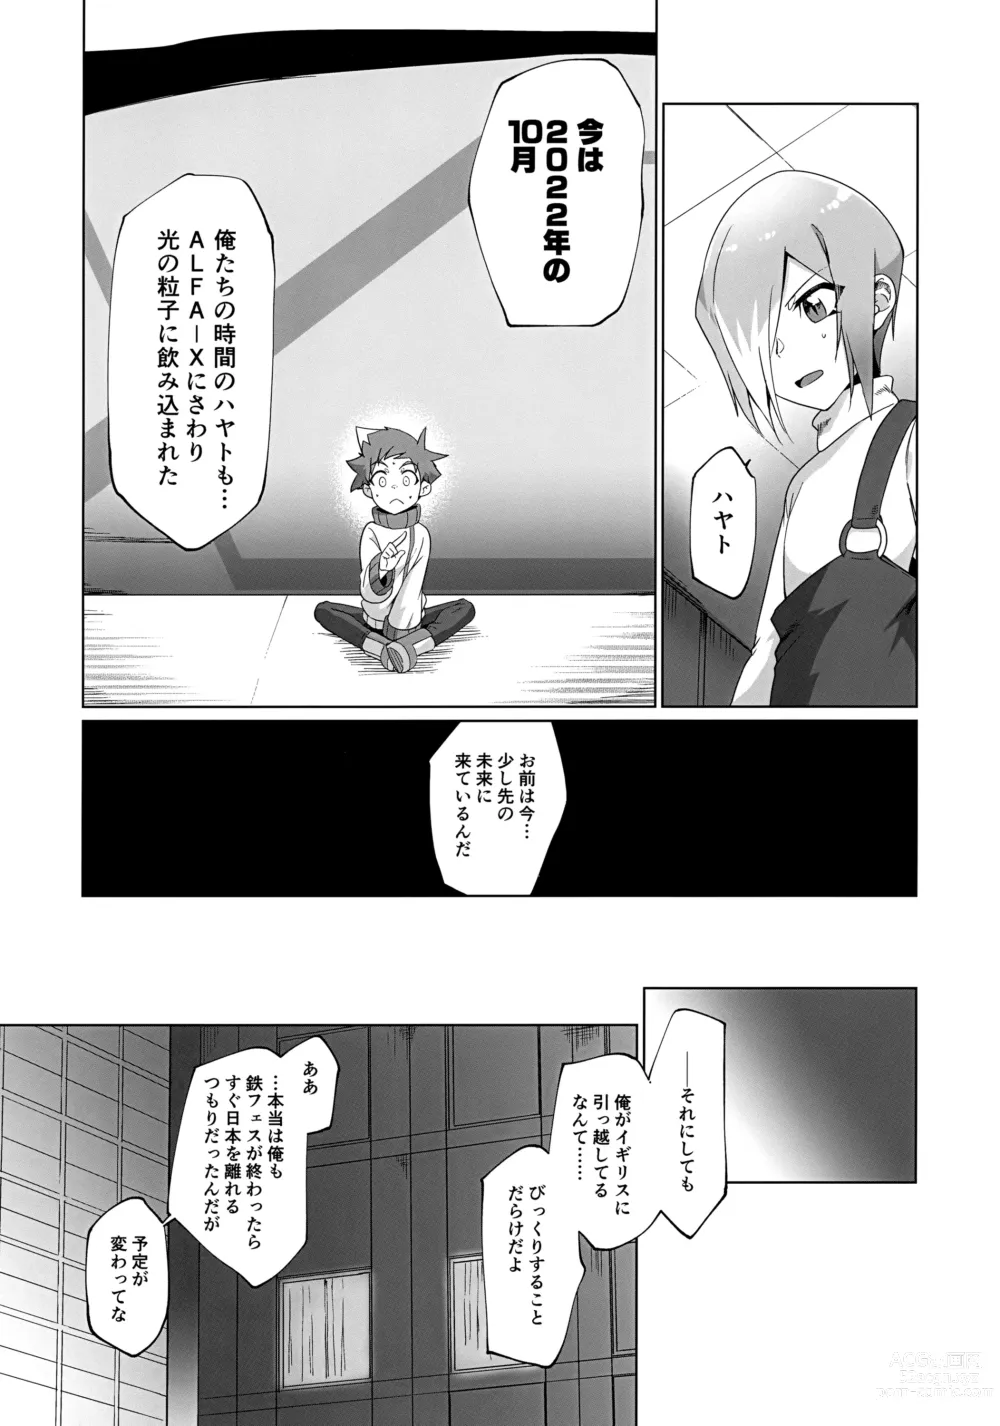 Page 9 of doujinshi Kinshi Evolution